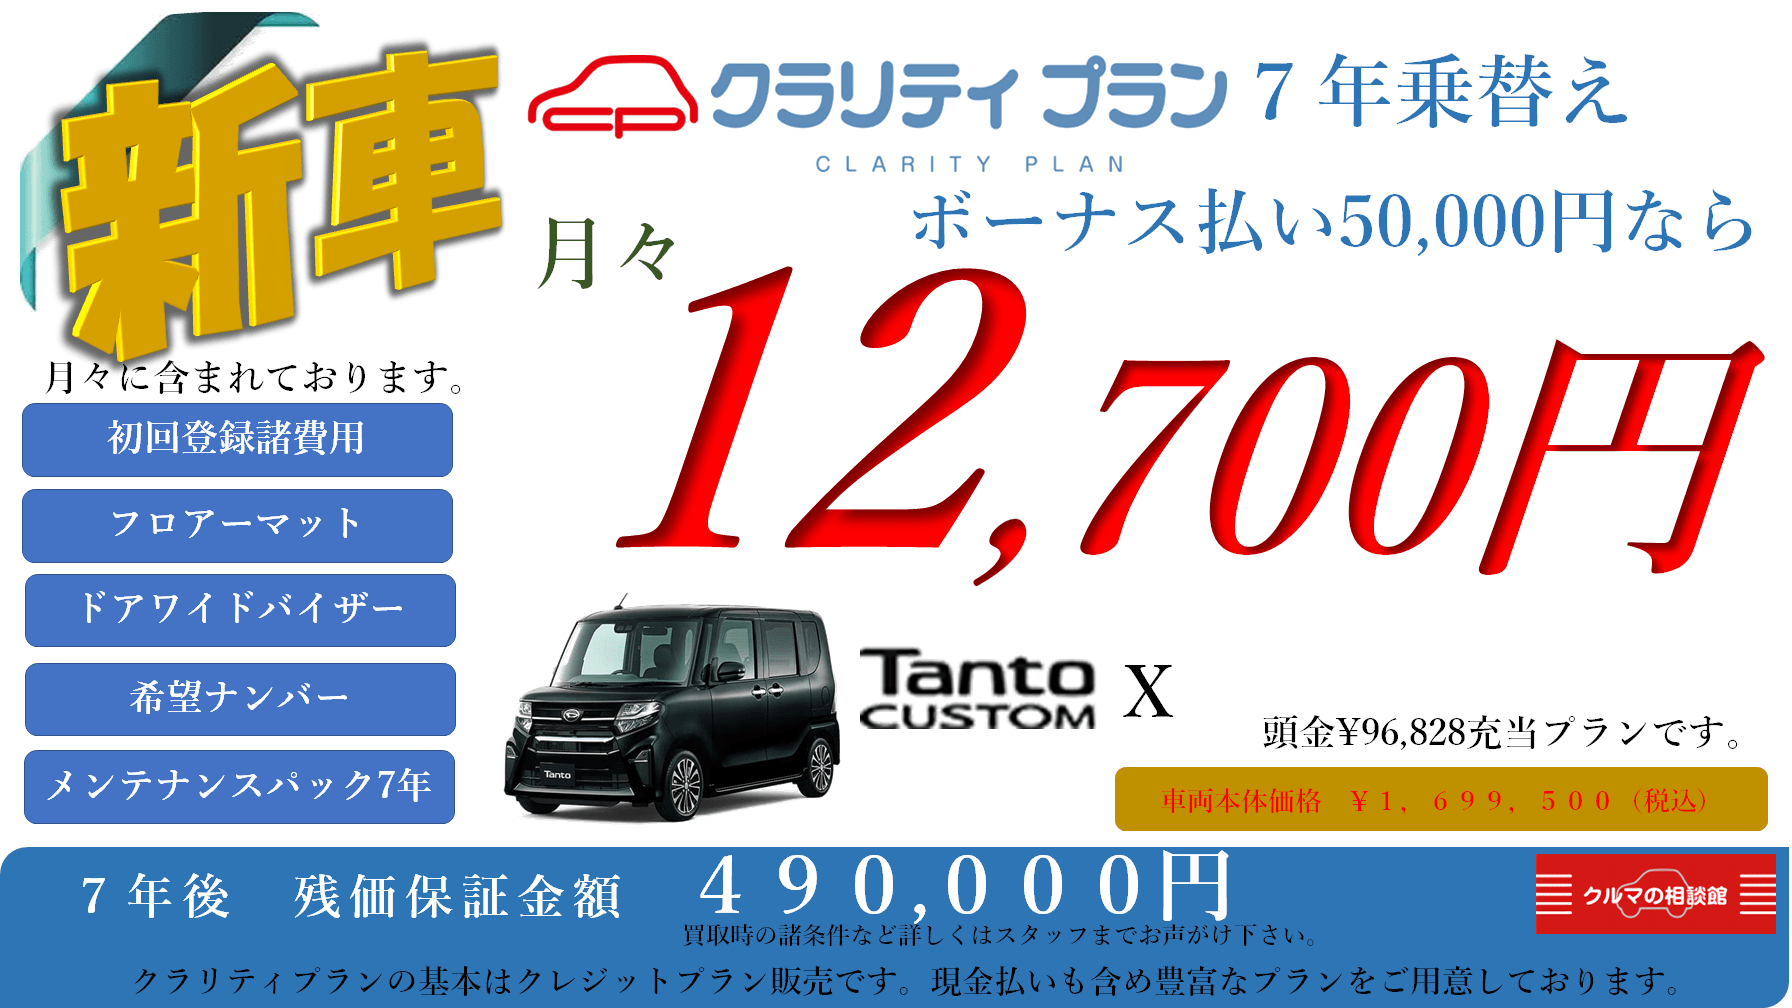 新車 Tanto CUSTOM X クラリティプラン7年乗替え ボーナス払い50,000円なら月々12,700円